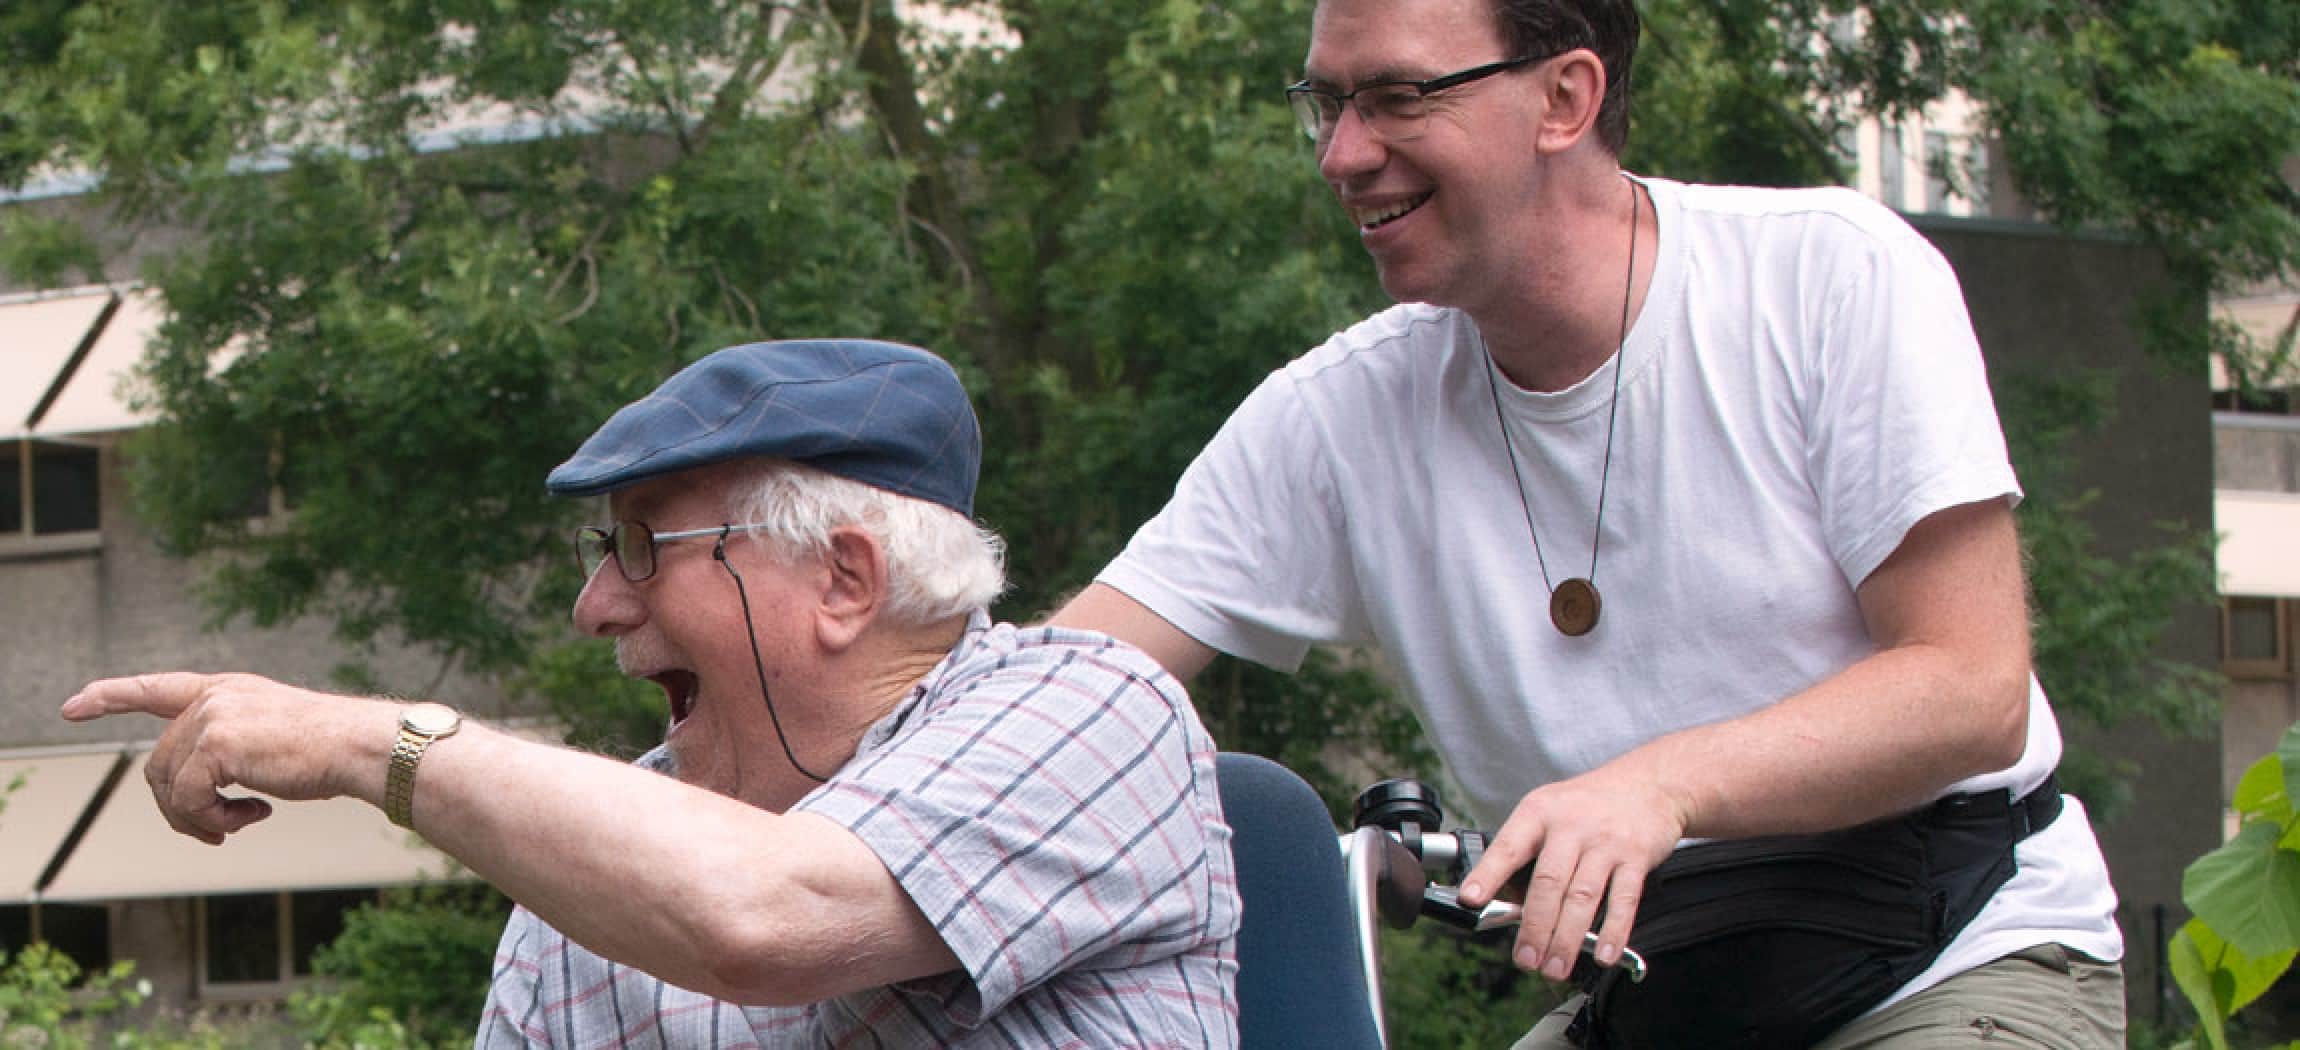 Rolstoeltransportfiets: jonge man in wit t-shirt en oude vrolijke man met petje op